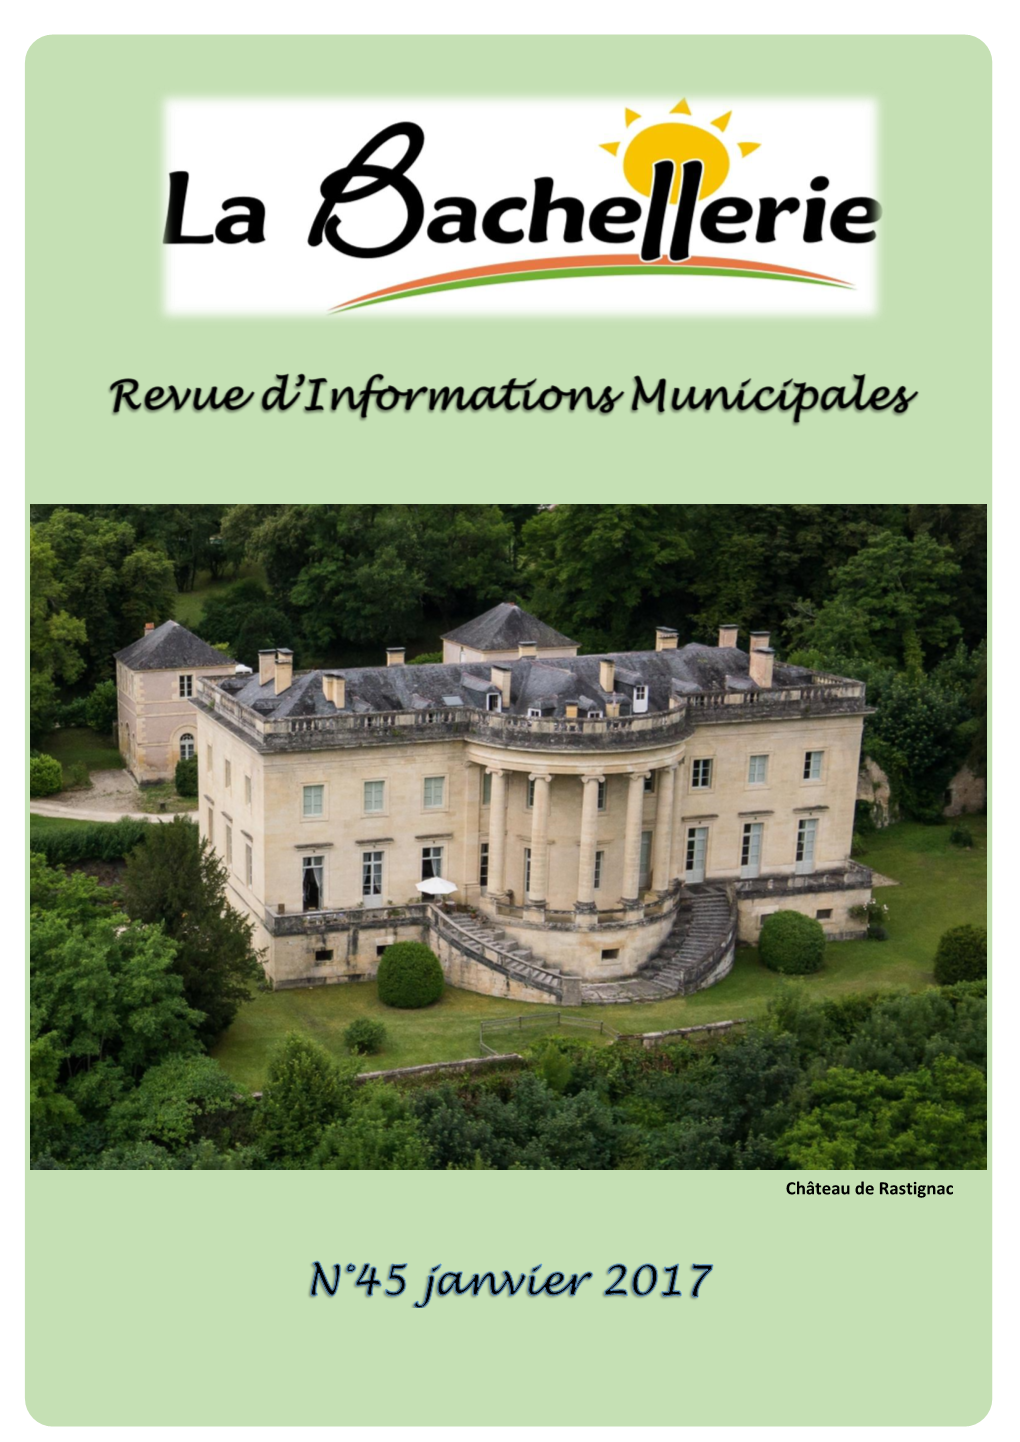 Château De Rastignac